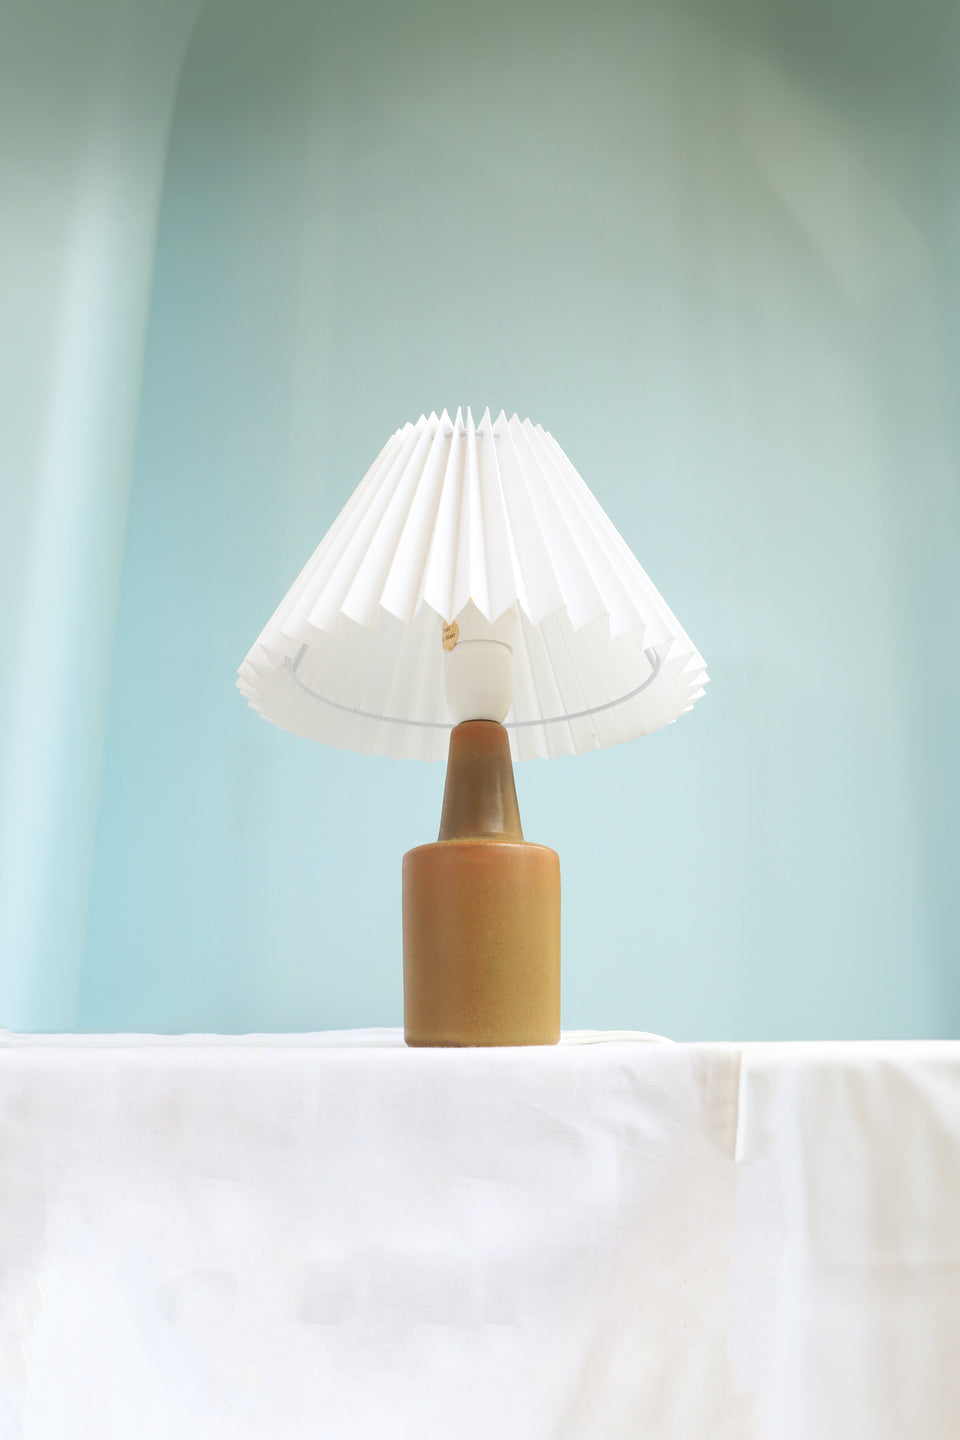 Danish Vintage Søholm Table Lamp/デンマークヴィンテージ スーホルム テーブルランプ 間接照明 北欧インテリア